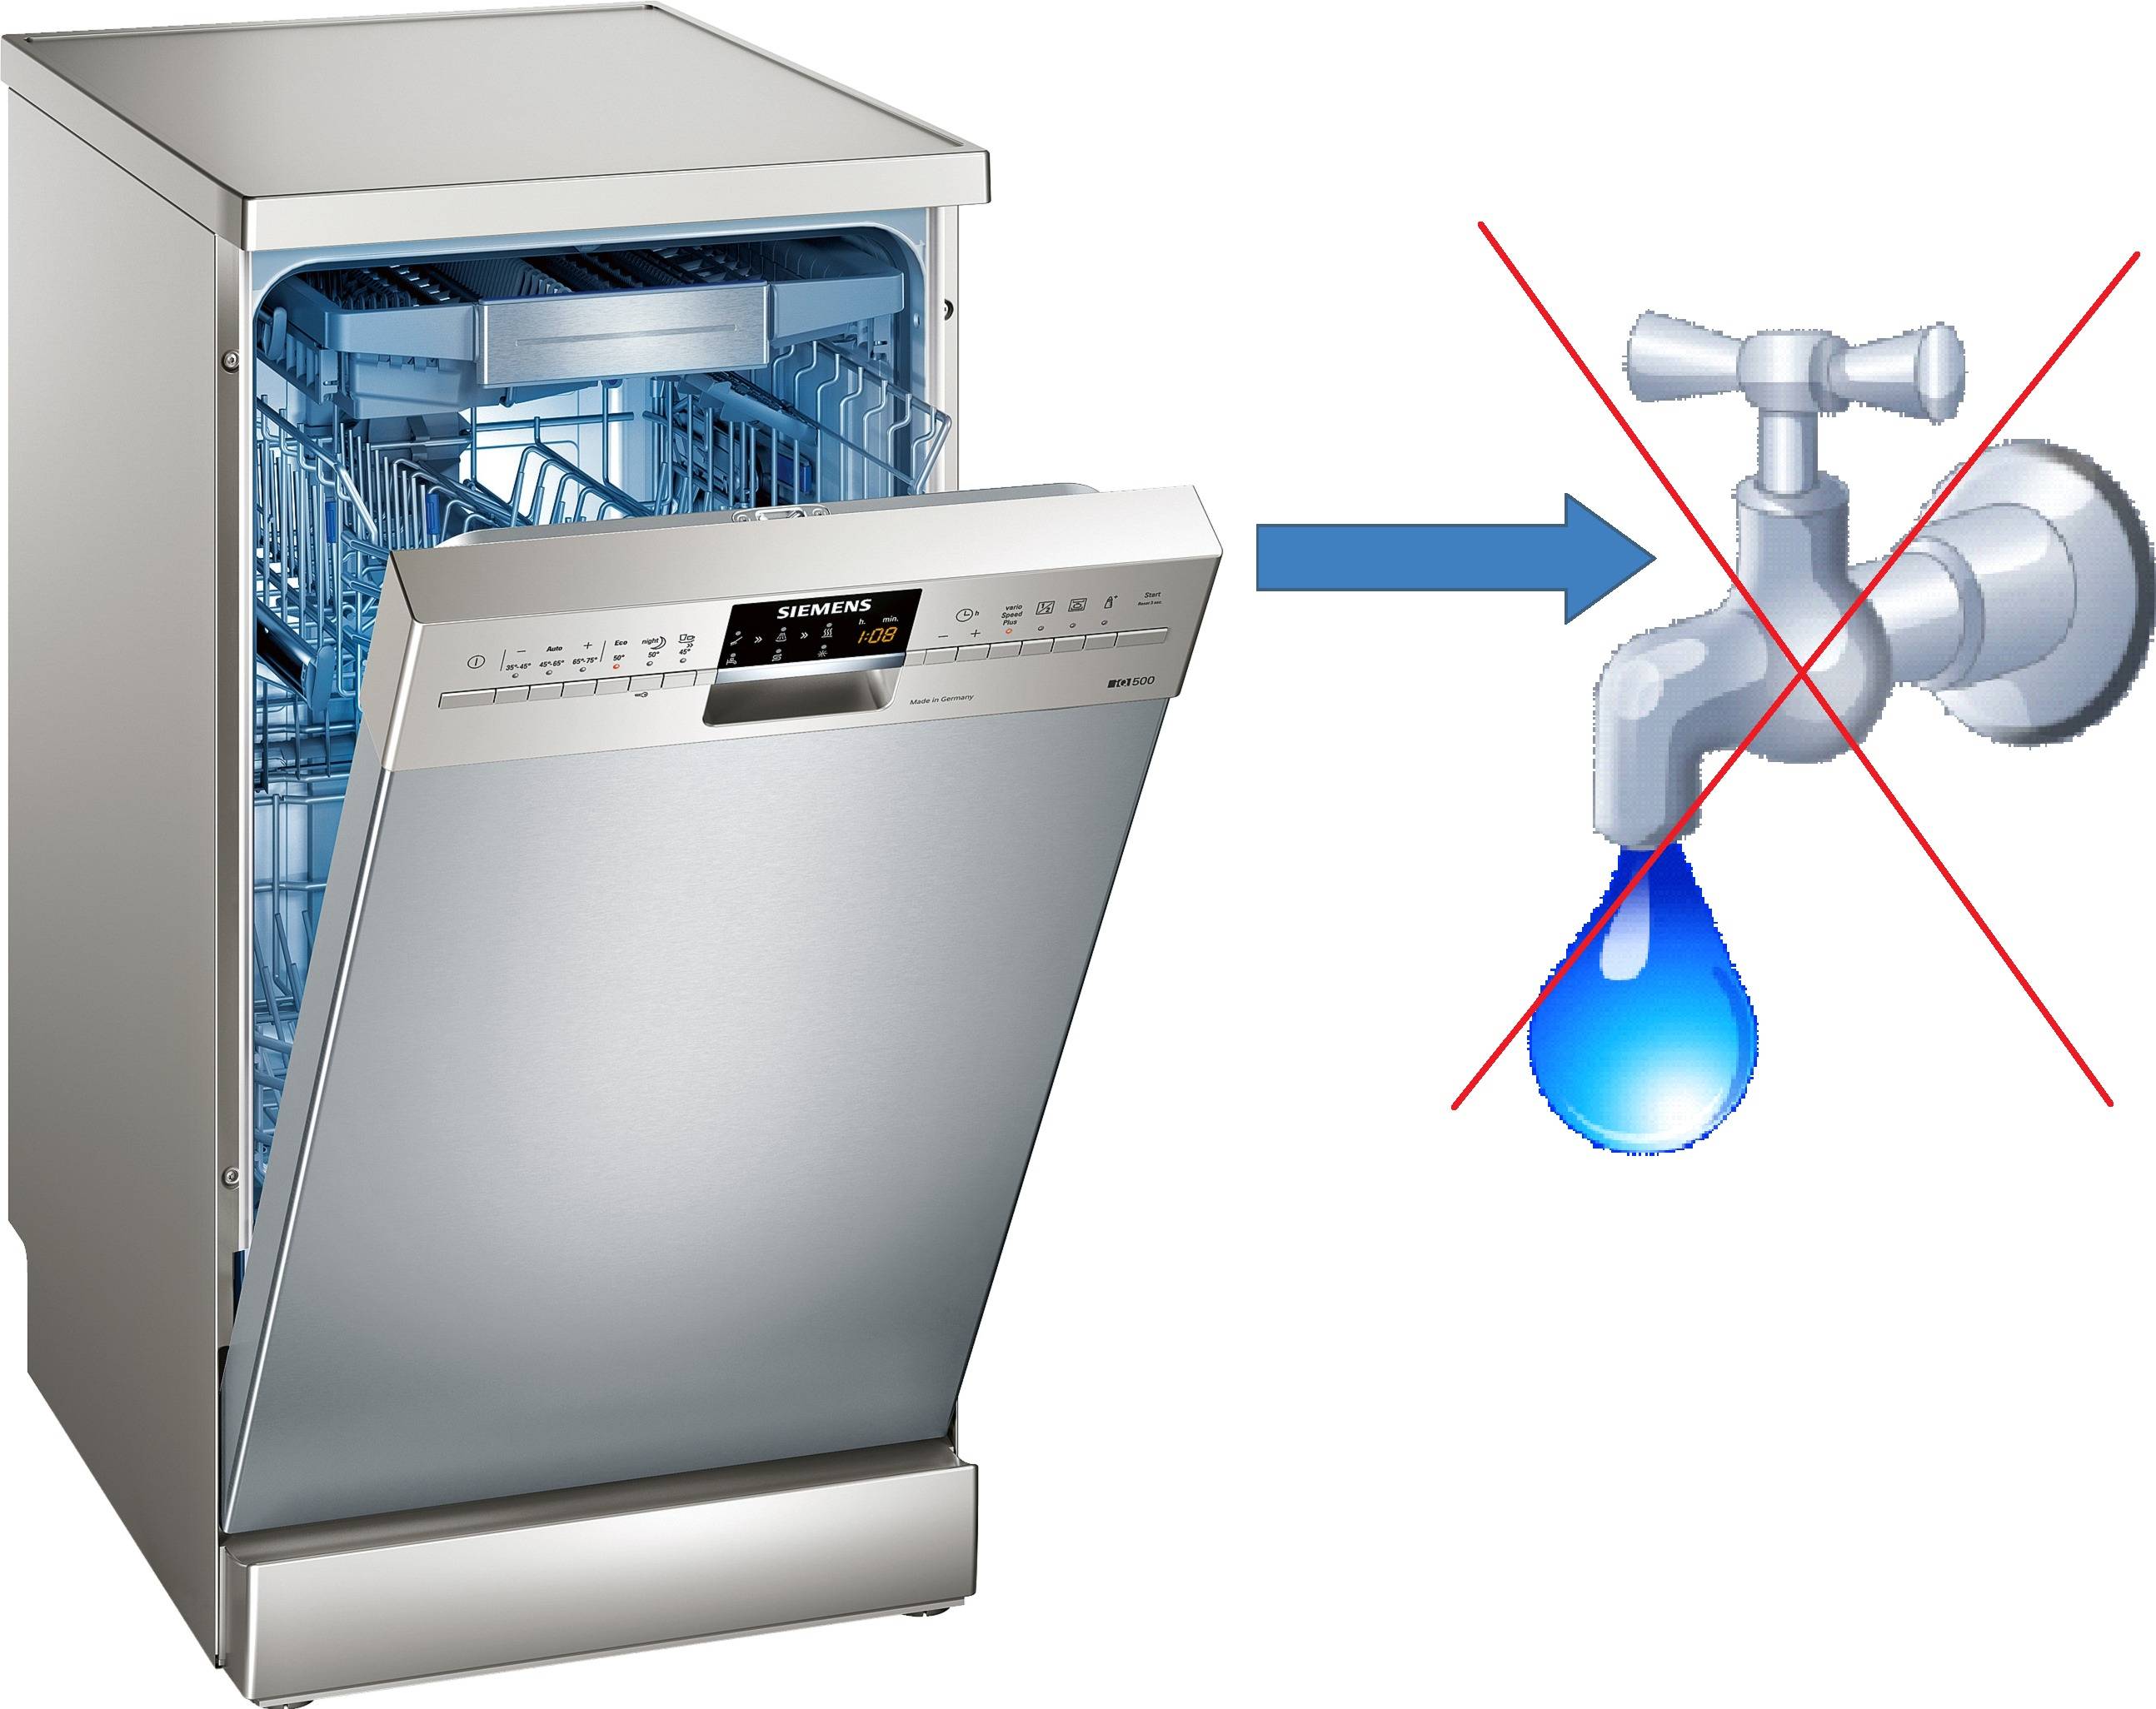 Посудомоечная с баком для воды. E15 Siemens посудомойка. Посудомойка Леран без водопровода. Gorenje посудомоечная машина с баком для воды. ПММ BDW 4106 D.